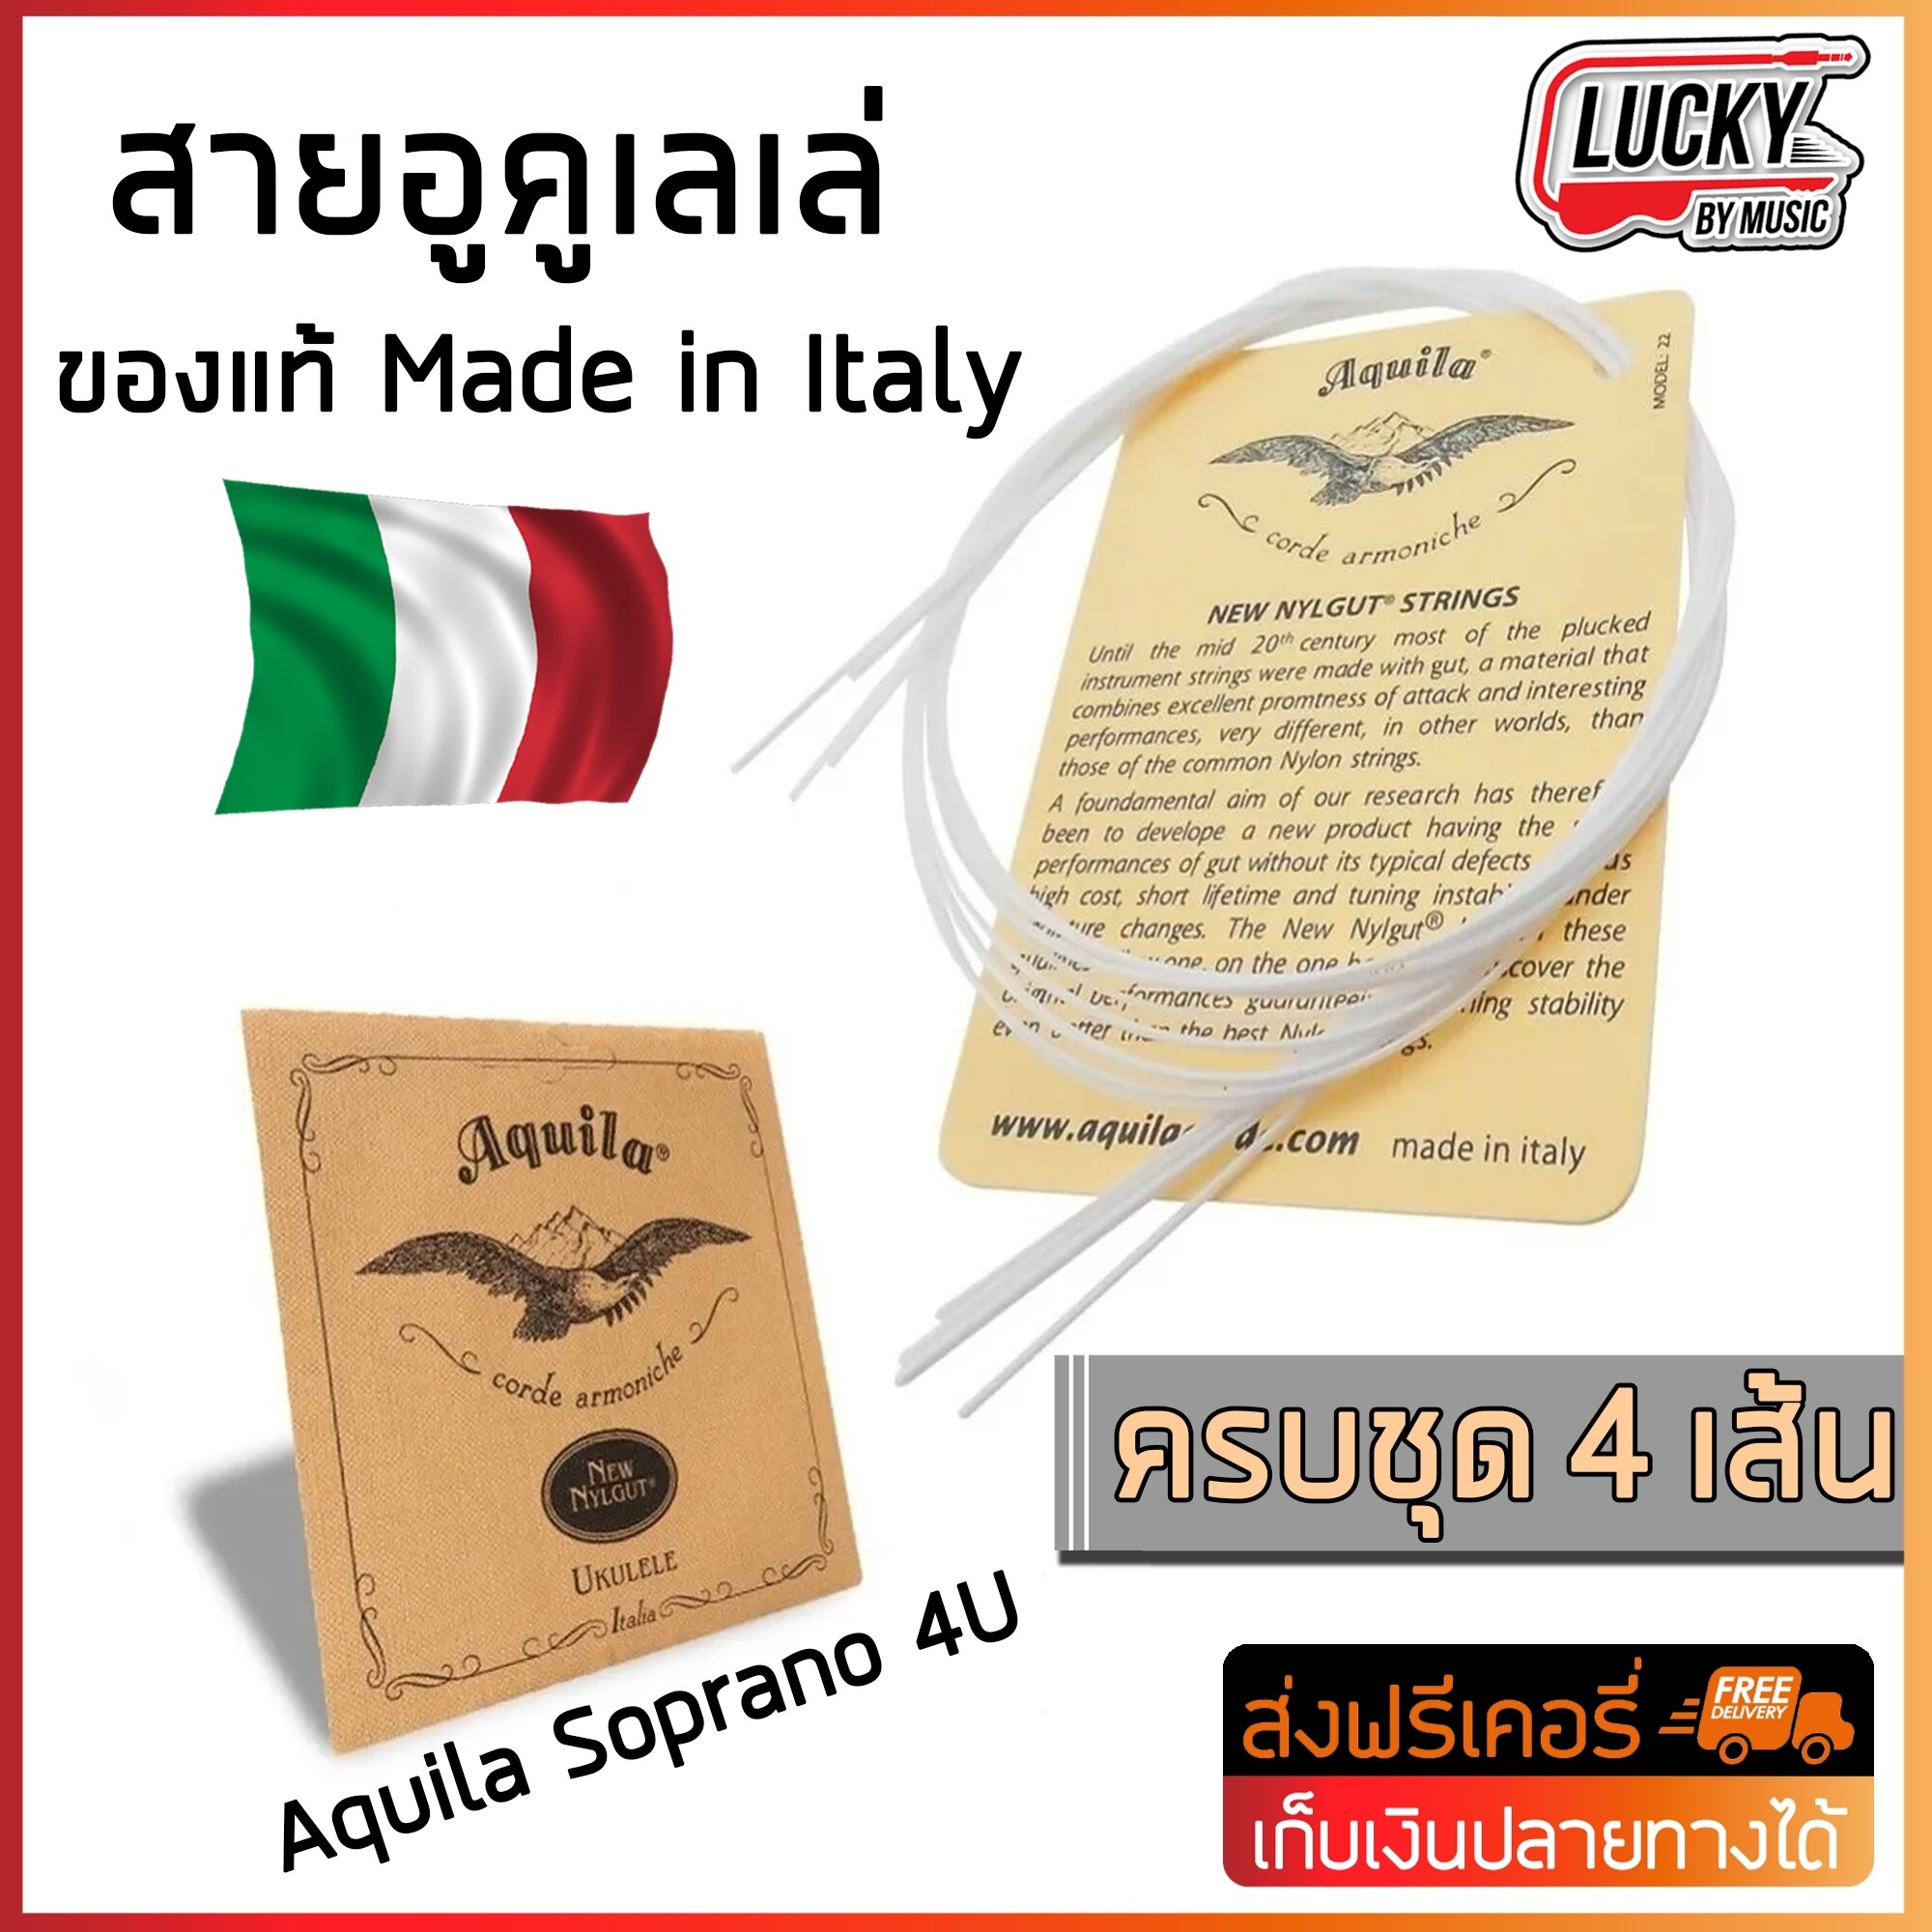 สาย Ukulele Aquila Soprano 4U ของแท้ Made in Italy ครบชุด 4 เส้น